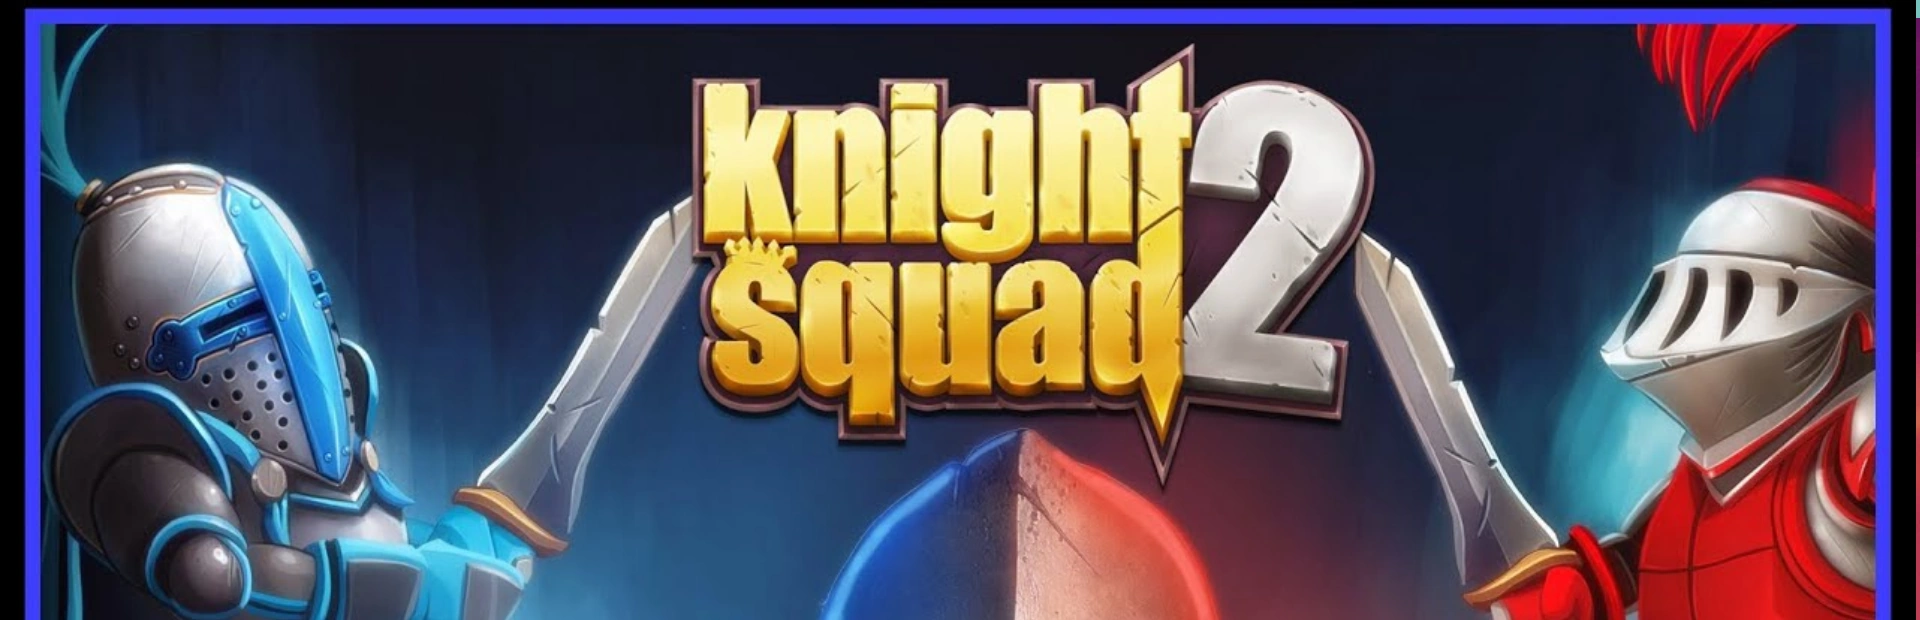 دانلود بازی Knight Squad 2 برای کامپیوتر | گیمباتو